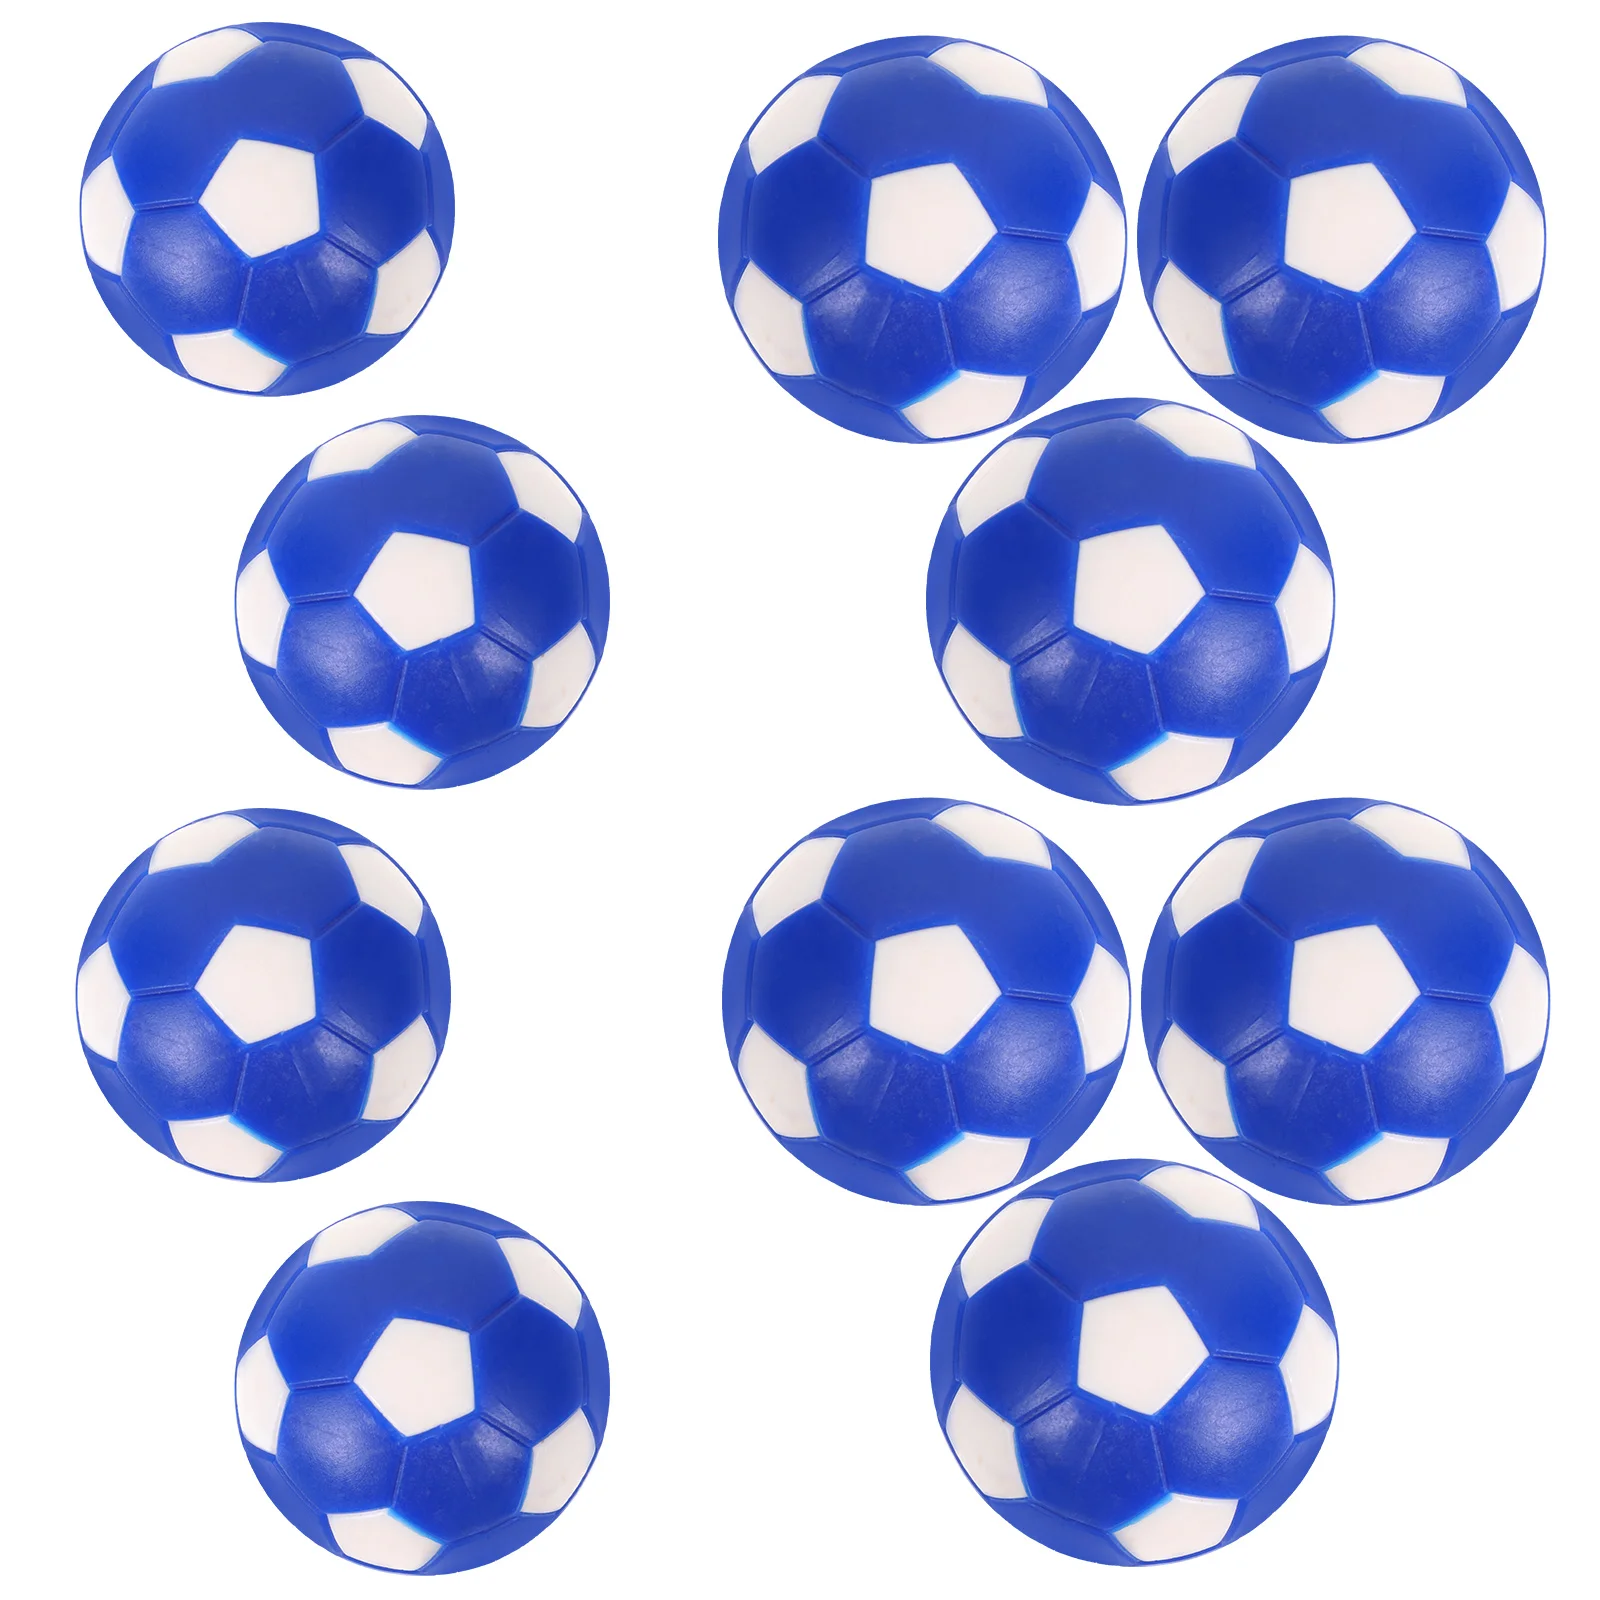 

10 шт. аксессуары для настольного футбола, сменные футбольные мини-мячи для взрослых, настольные мячи из ПВХ для детей